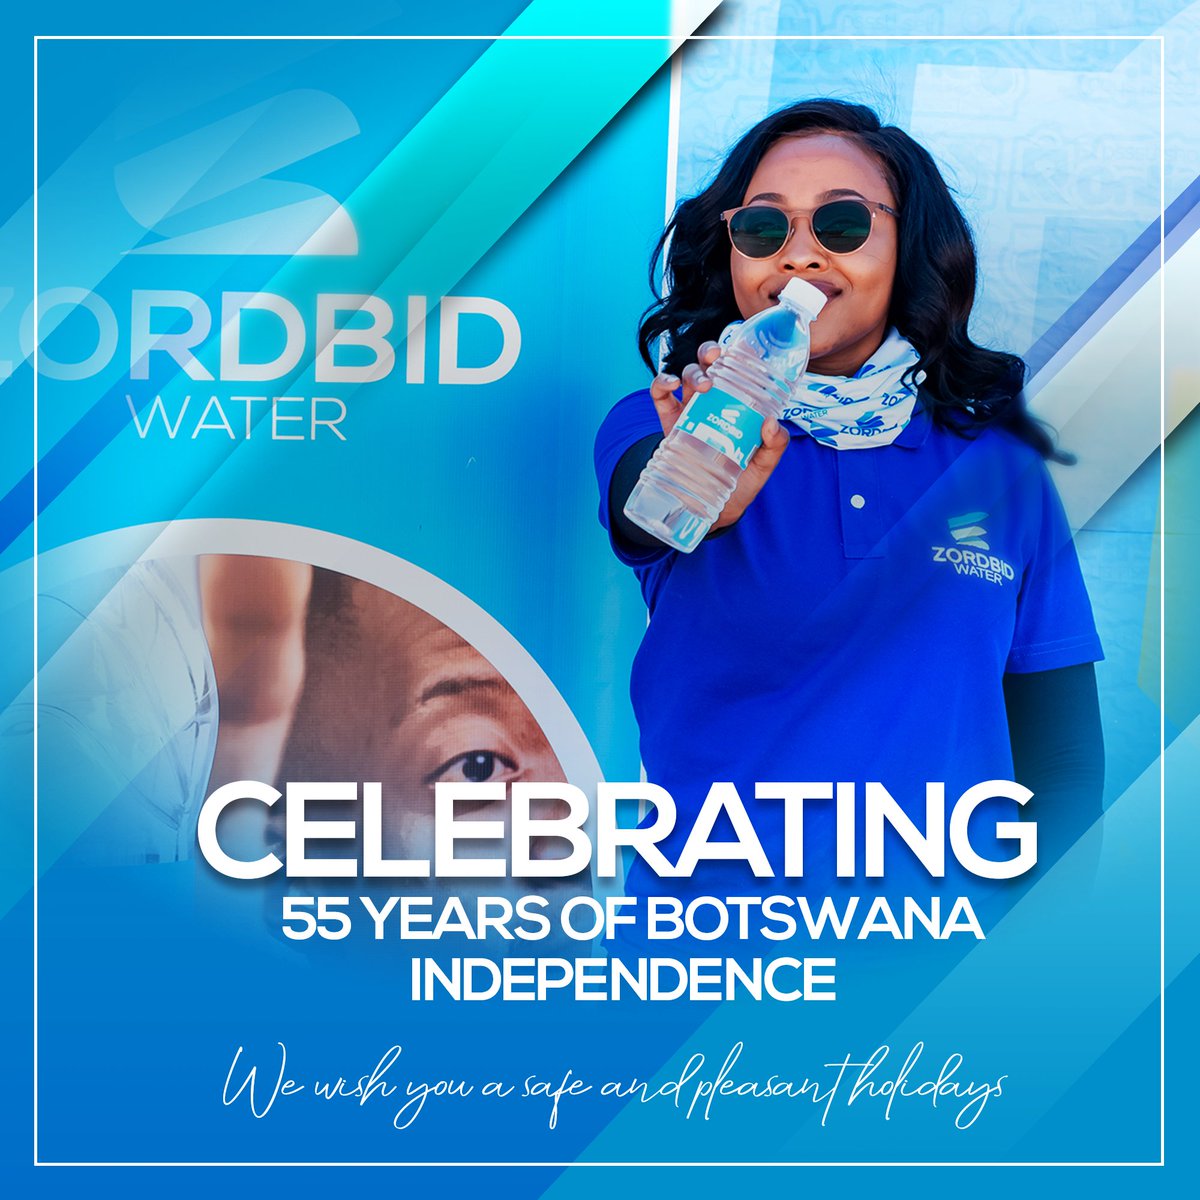 Celebrating 55 years of Botswana Independence 🇧🇼 😍
#ZordbidBrands #ZordbidWater #BluePride #ZordbidBrandsBiltong #PrideOfKalahariBeef #BotswanaBrand #PushaBW